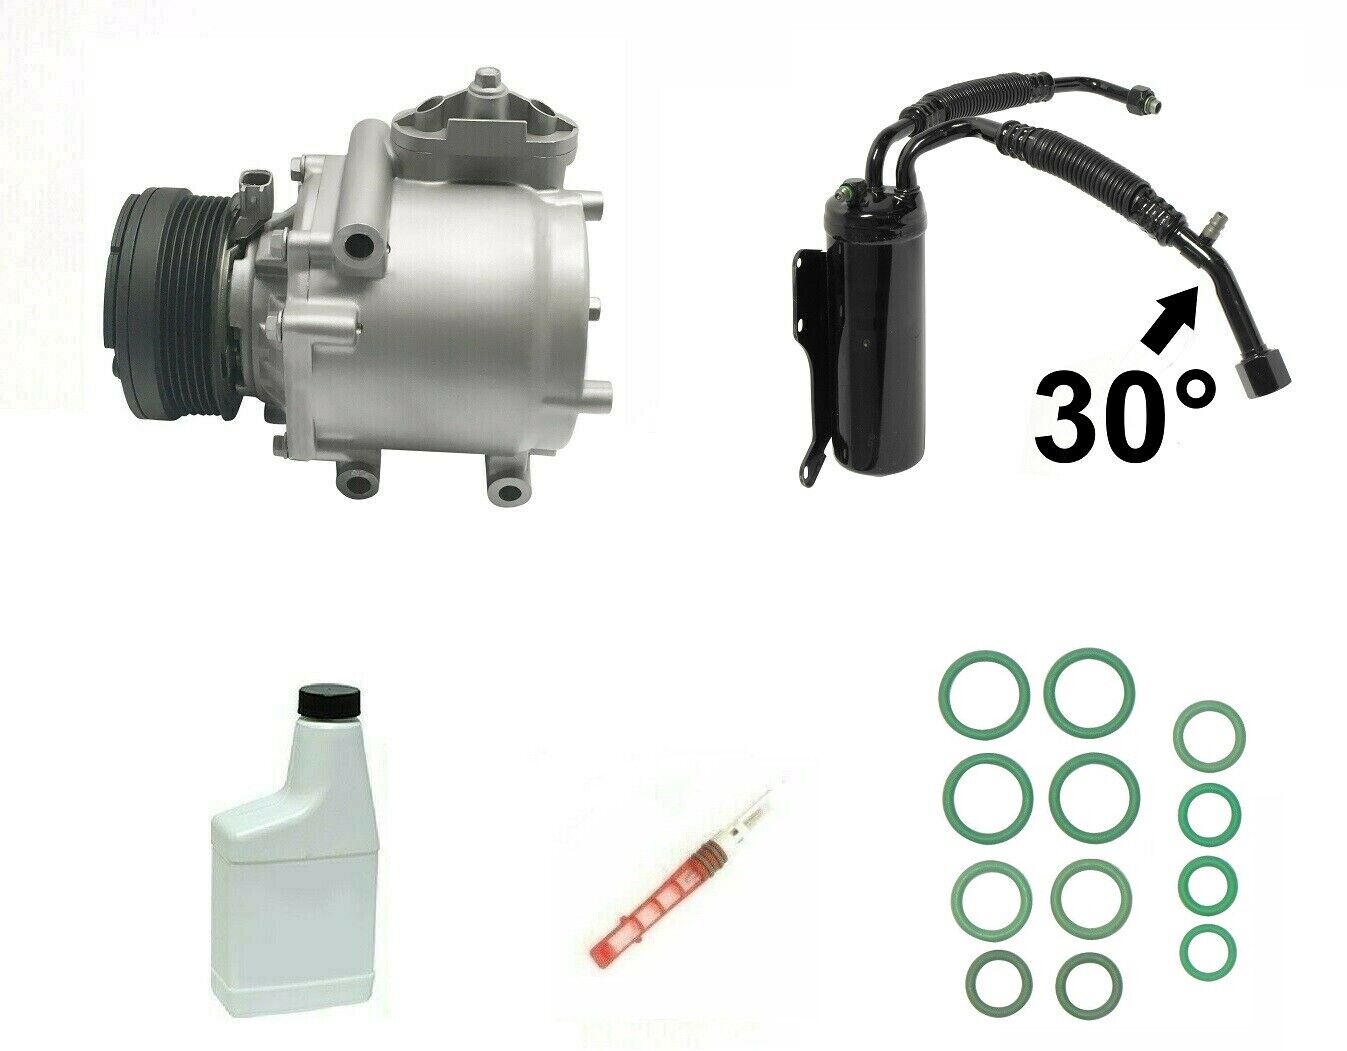 RYC Reman AC Compressor Kit GG588 Fits Ford E-150 4.6L 5.4L 2003 2004 2005 2006